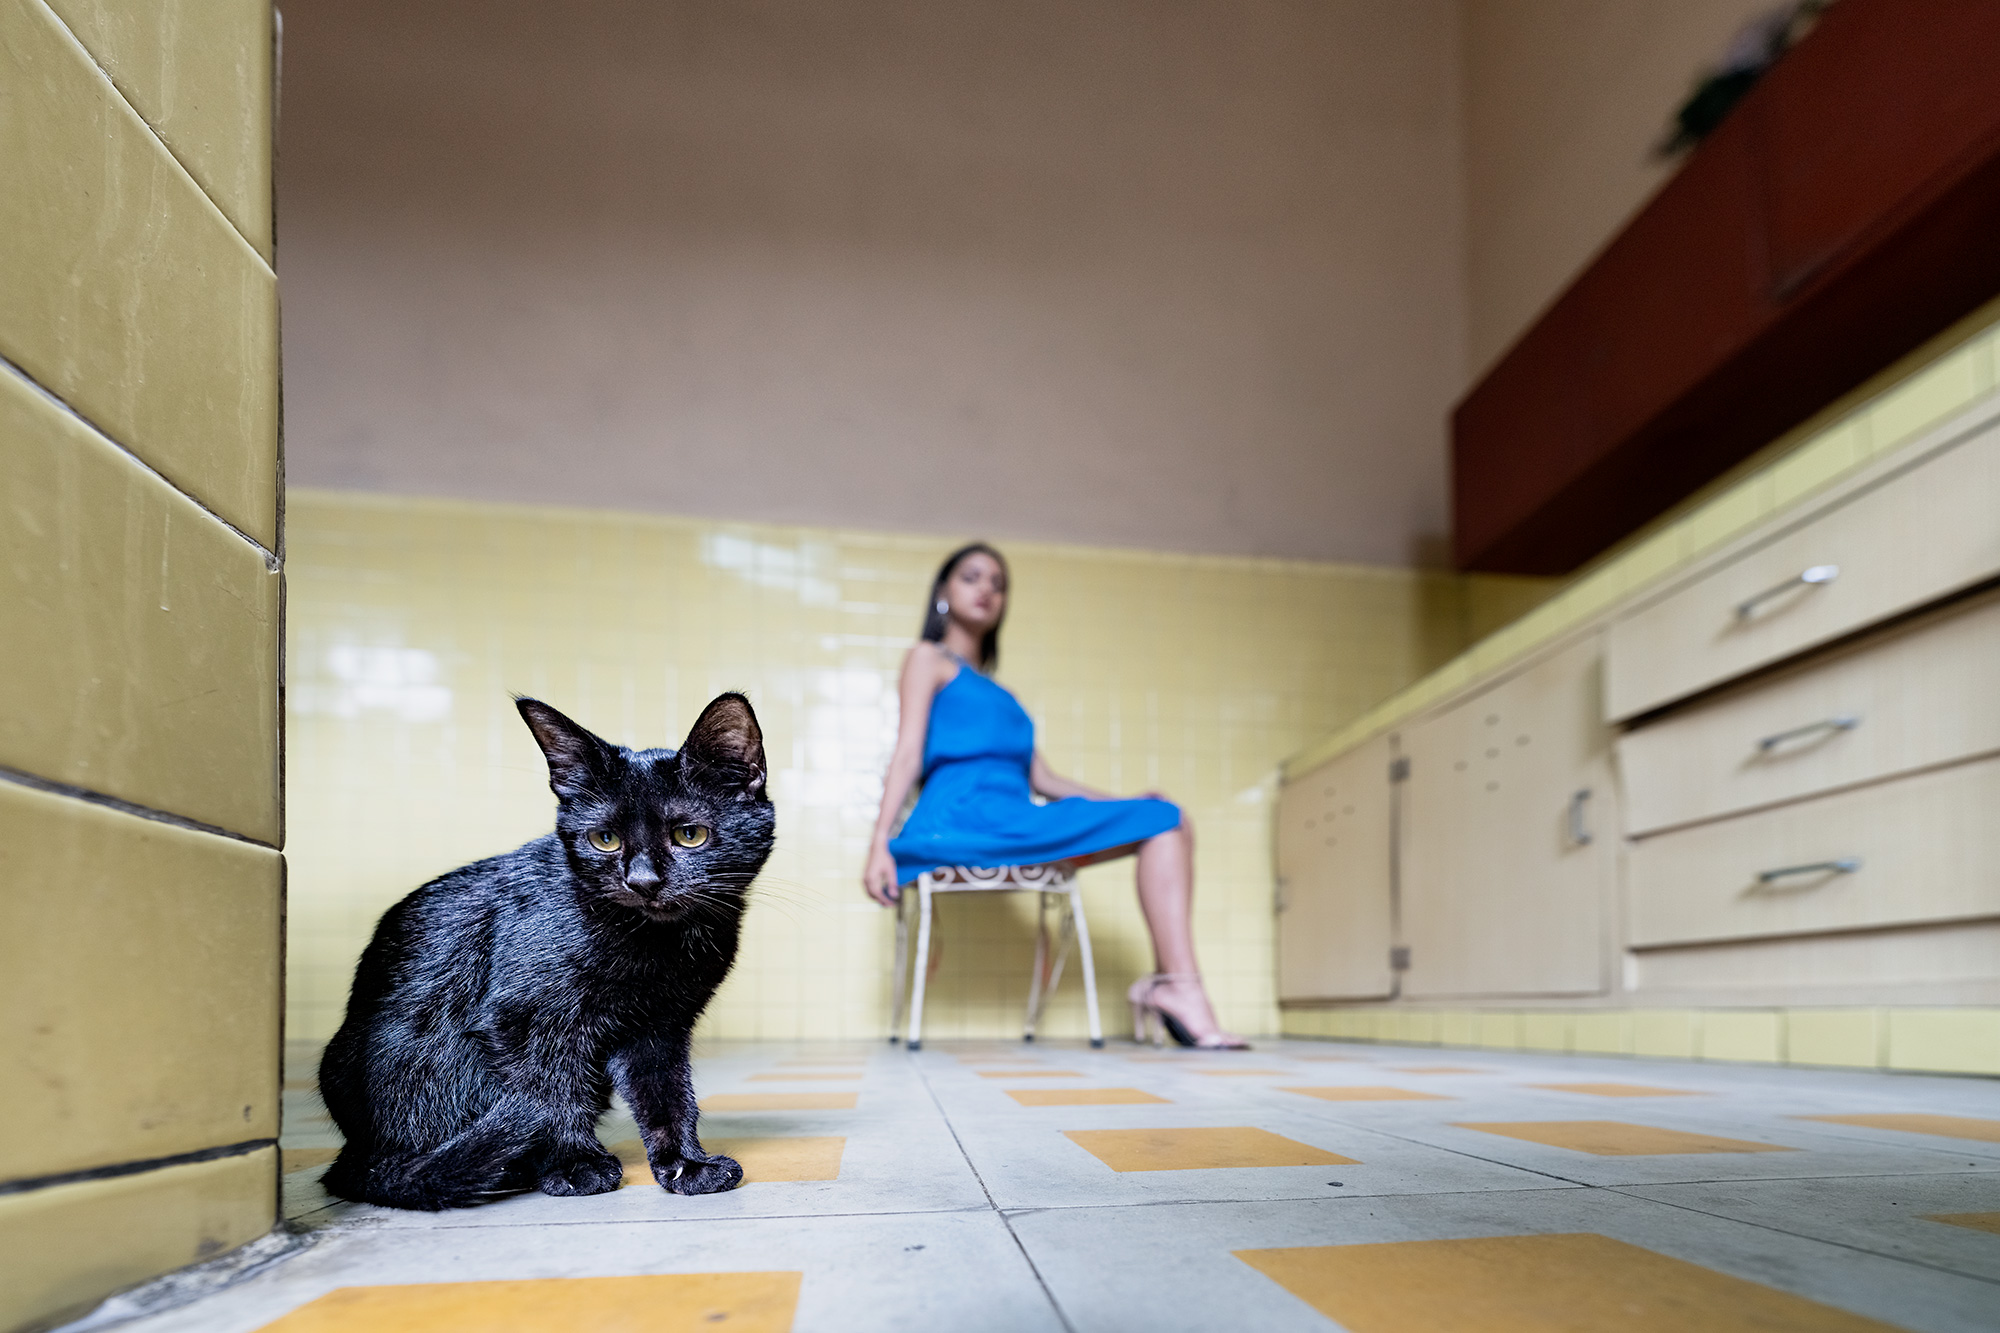 Katze und Fotomodell in der Küche einer alten Kolonialvilla in Kuba auf einer Fotoreise fotografiert.